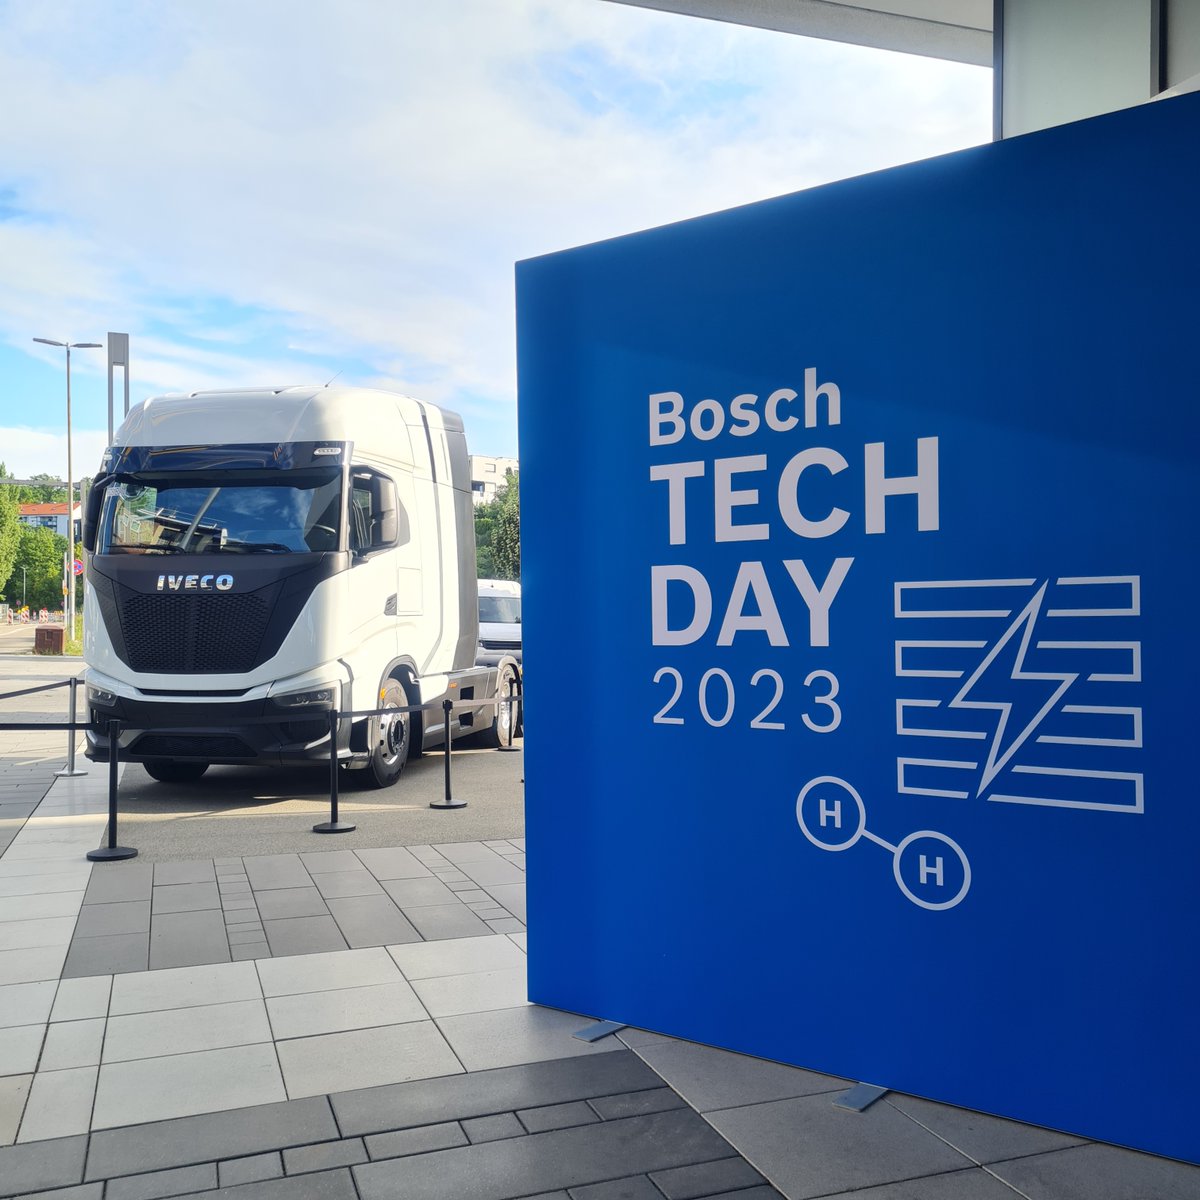 Herzlich Willkommen zu dem #BoschTechDay in Stuttgart-Feuerbach! 👏😃 Heute erfahrt ihr mehr über die Bosch-Lösungen für die Erzeugung und Anwendung von #Wasserstoff. 🤓 bosch-presse.de/pressportal/de…